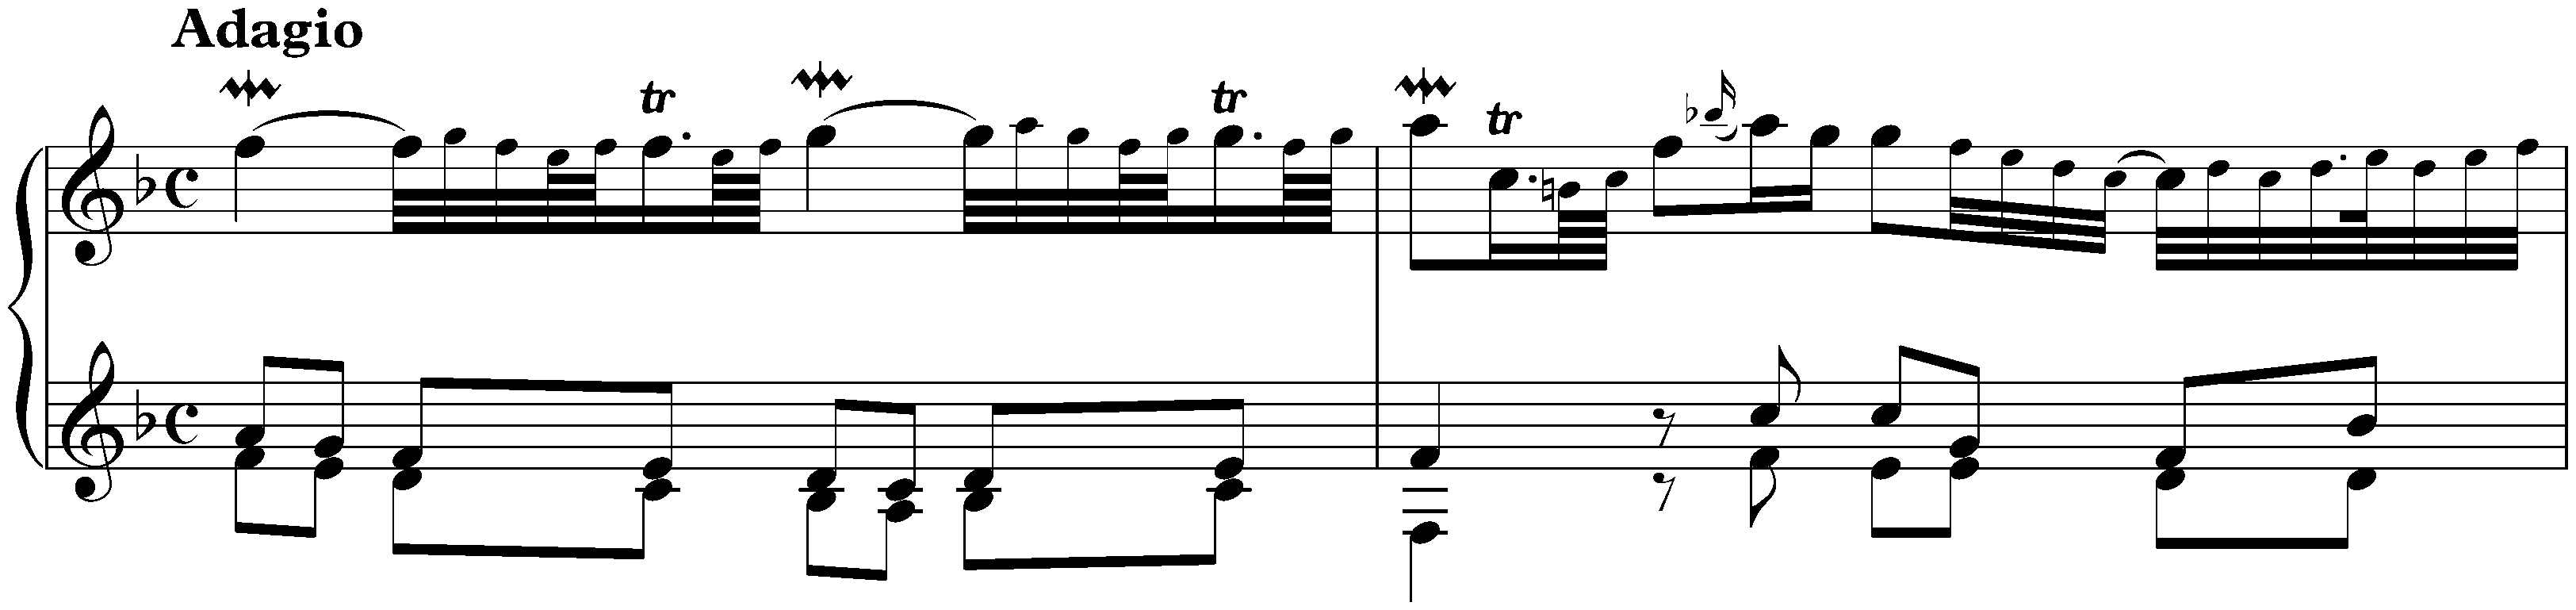 Suite in F major, HWV 427; 1. Adagio